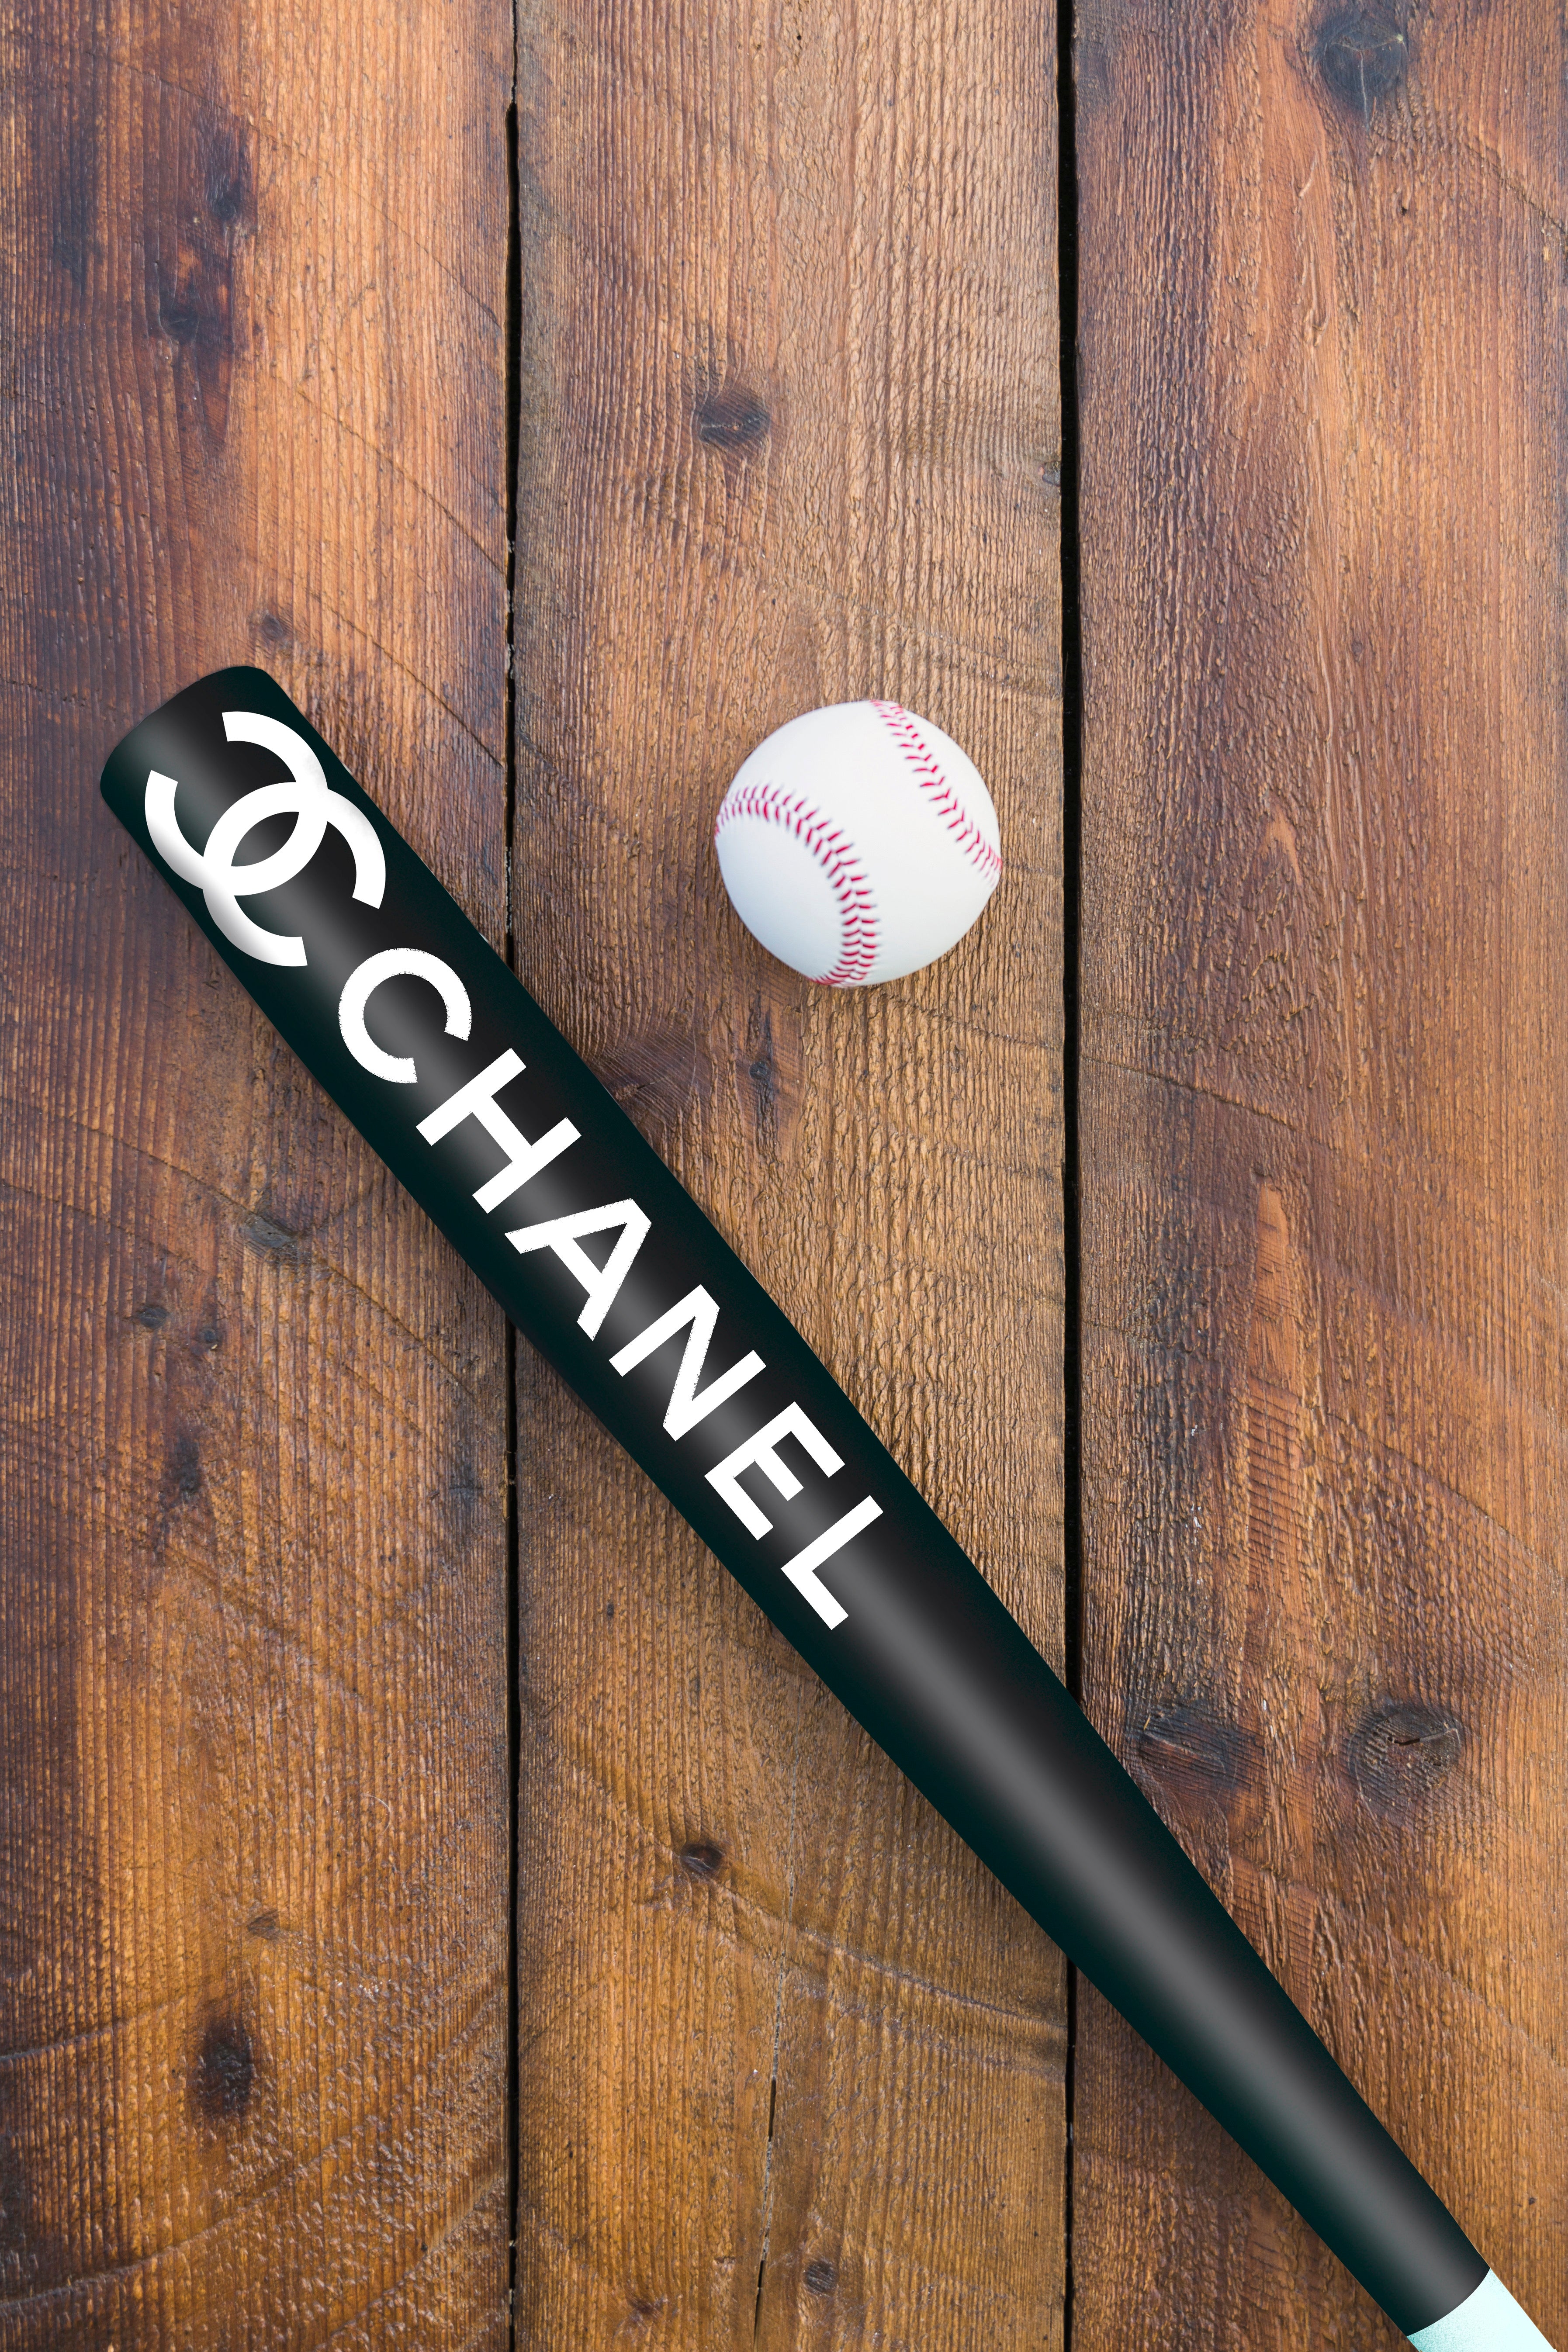 Batte Baseball CHANEL – The French Custom